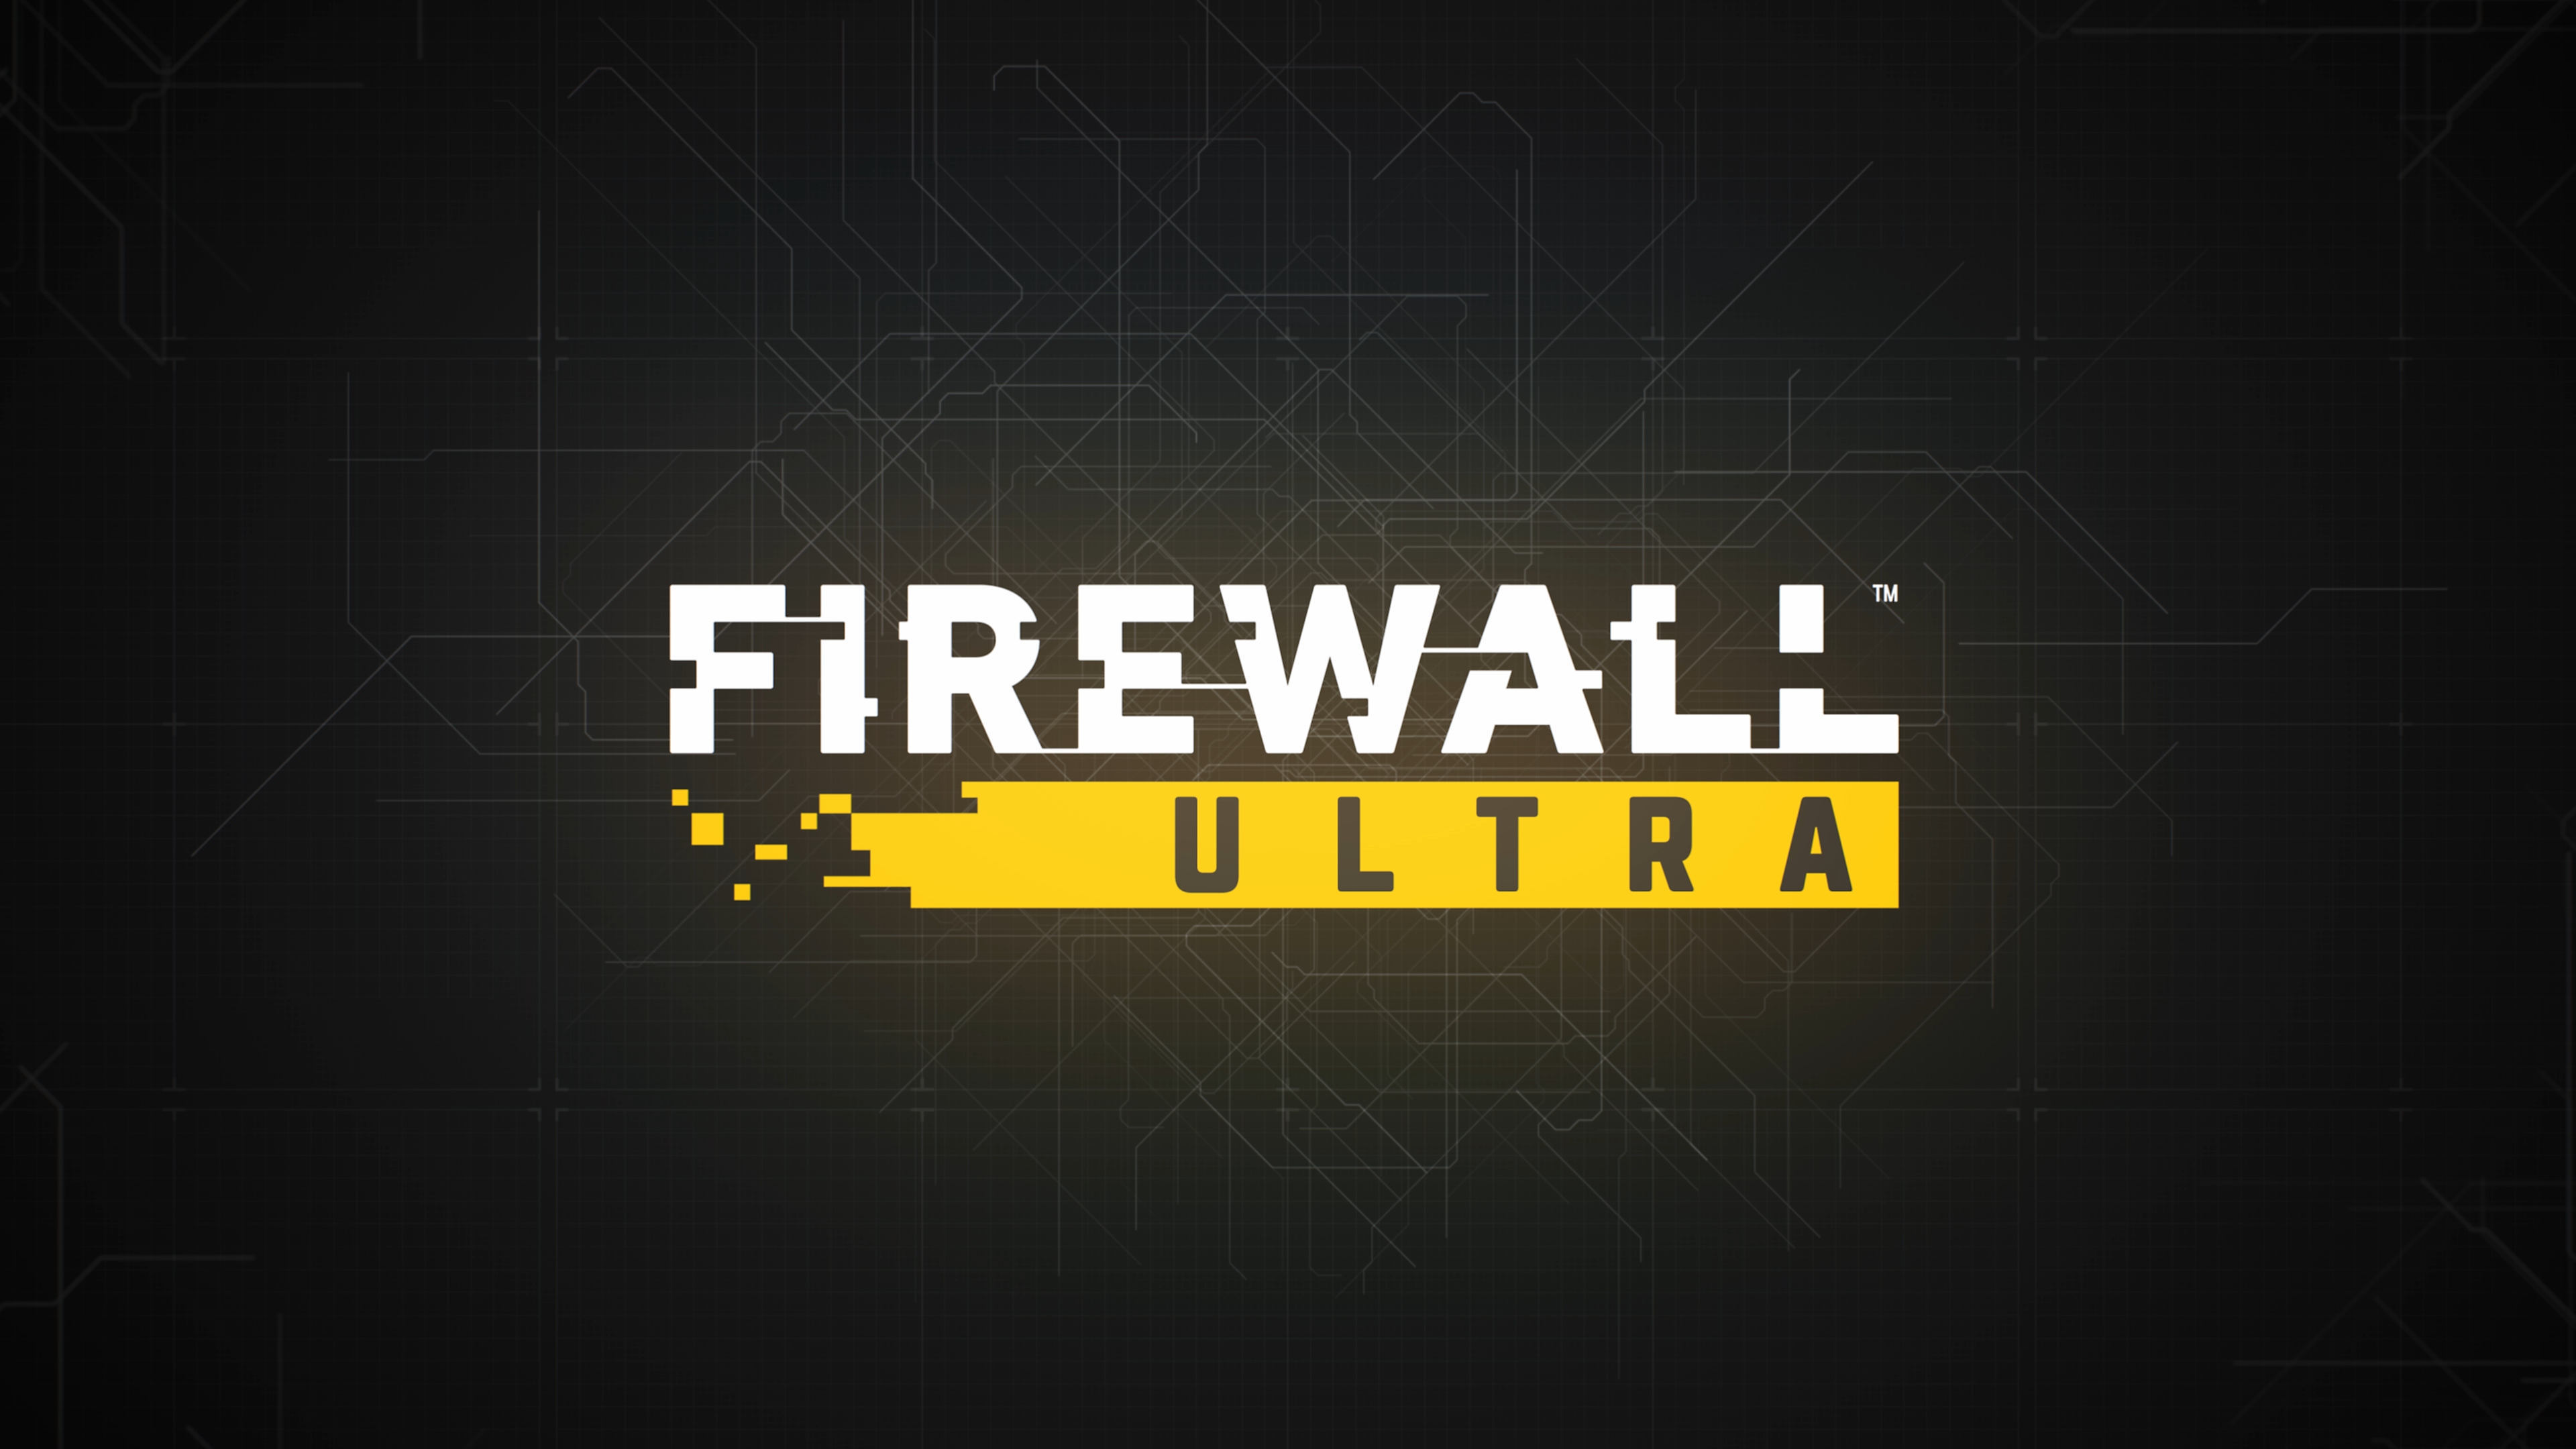 Firewall Ultra – kuvakaappaus, promokuvitusta